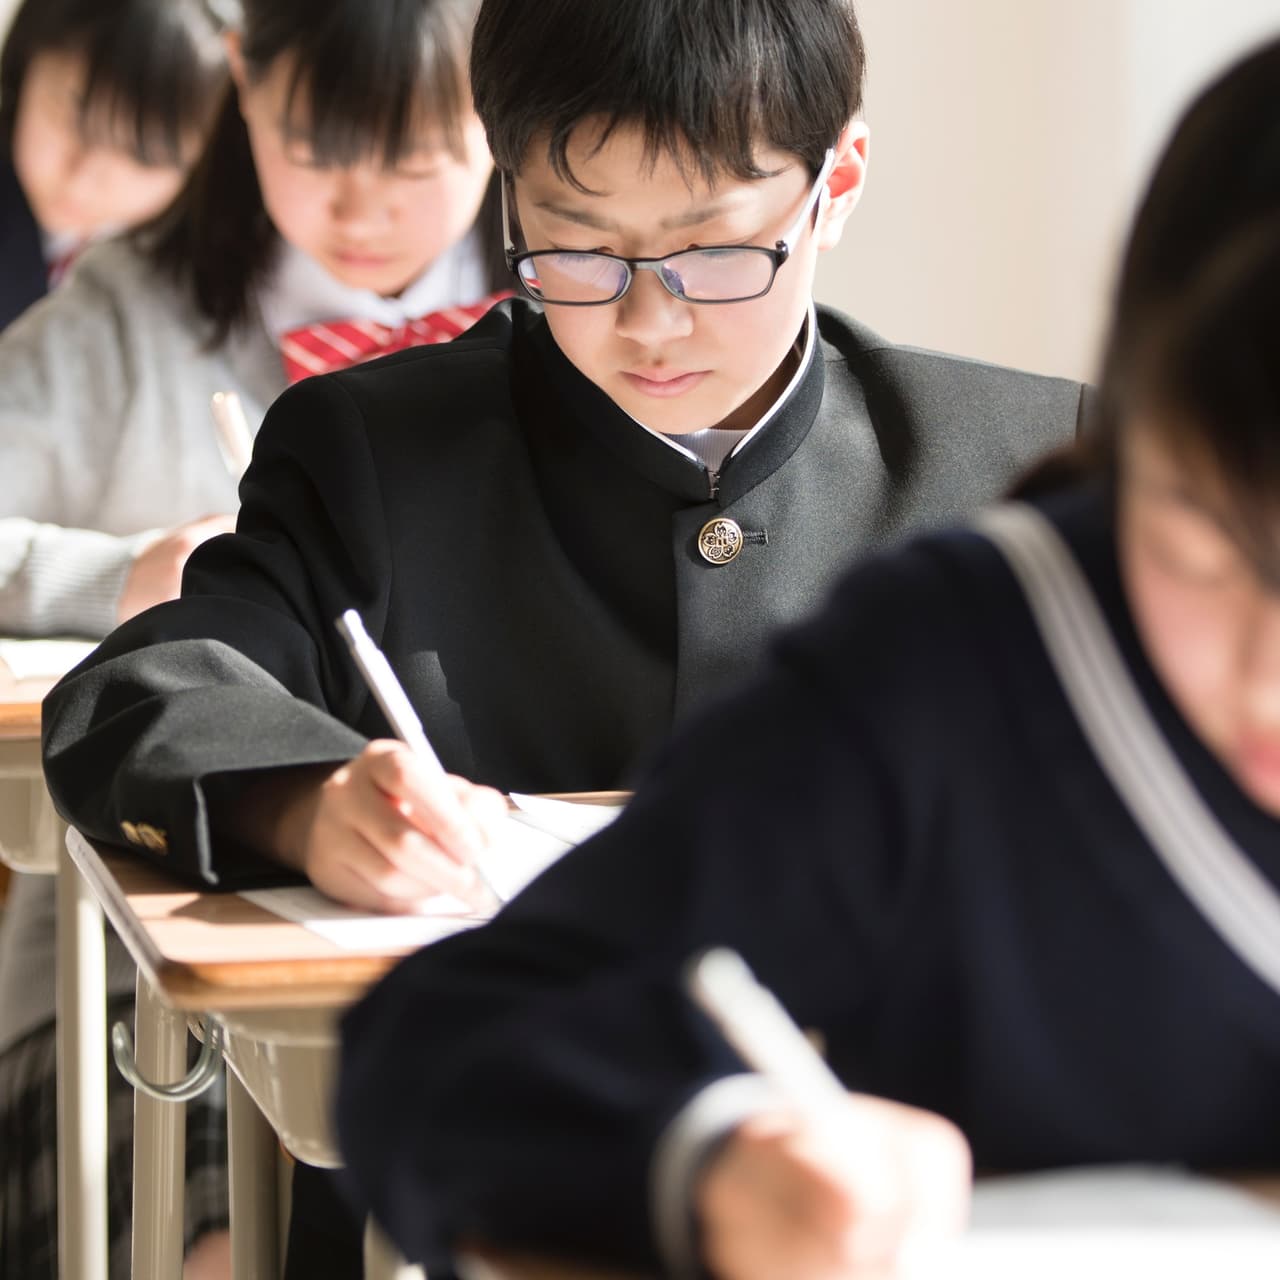 【日本の学力と学習意欲】『脱ゆとり教育』が得たものと失ったもの